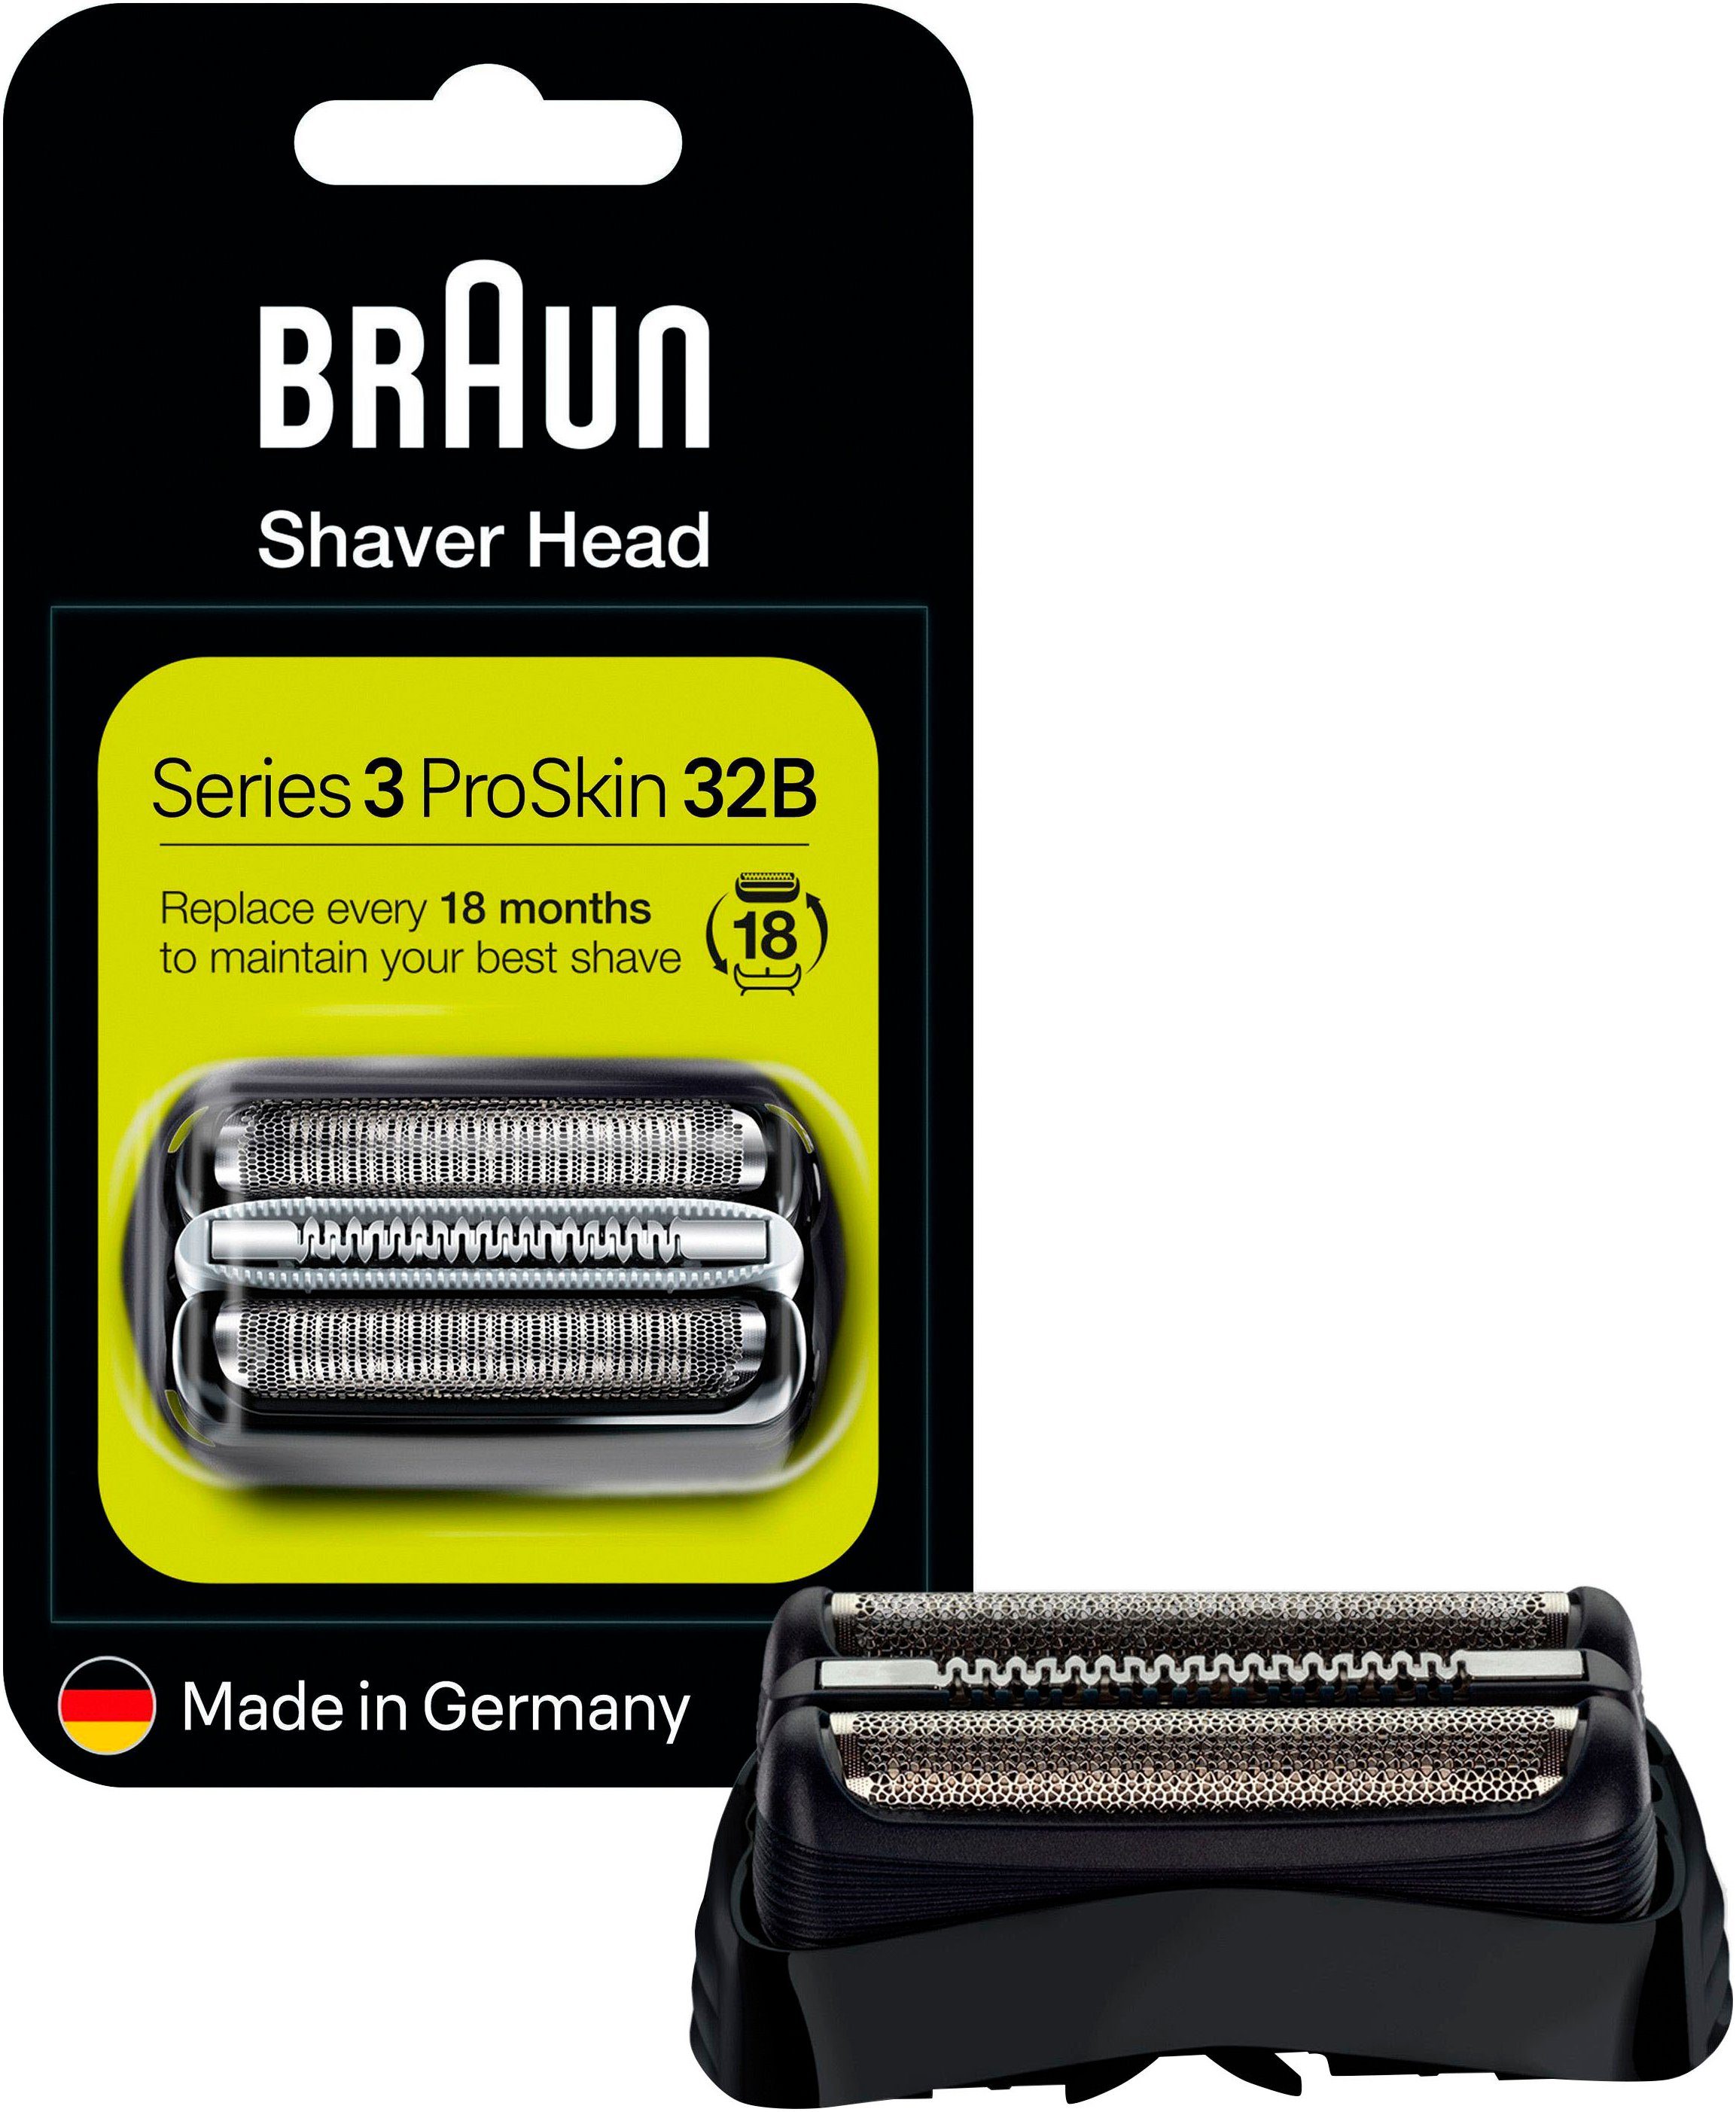 Braun Ersatzscherteil Series 3 32, kompatibel mit Series 3 Rasierern,  Effektiv und sanft zugleich: Scherkopf mit 3 Klingen und 1 Mikro-Kamm